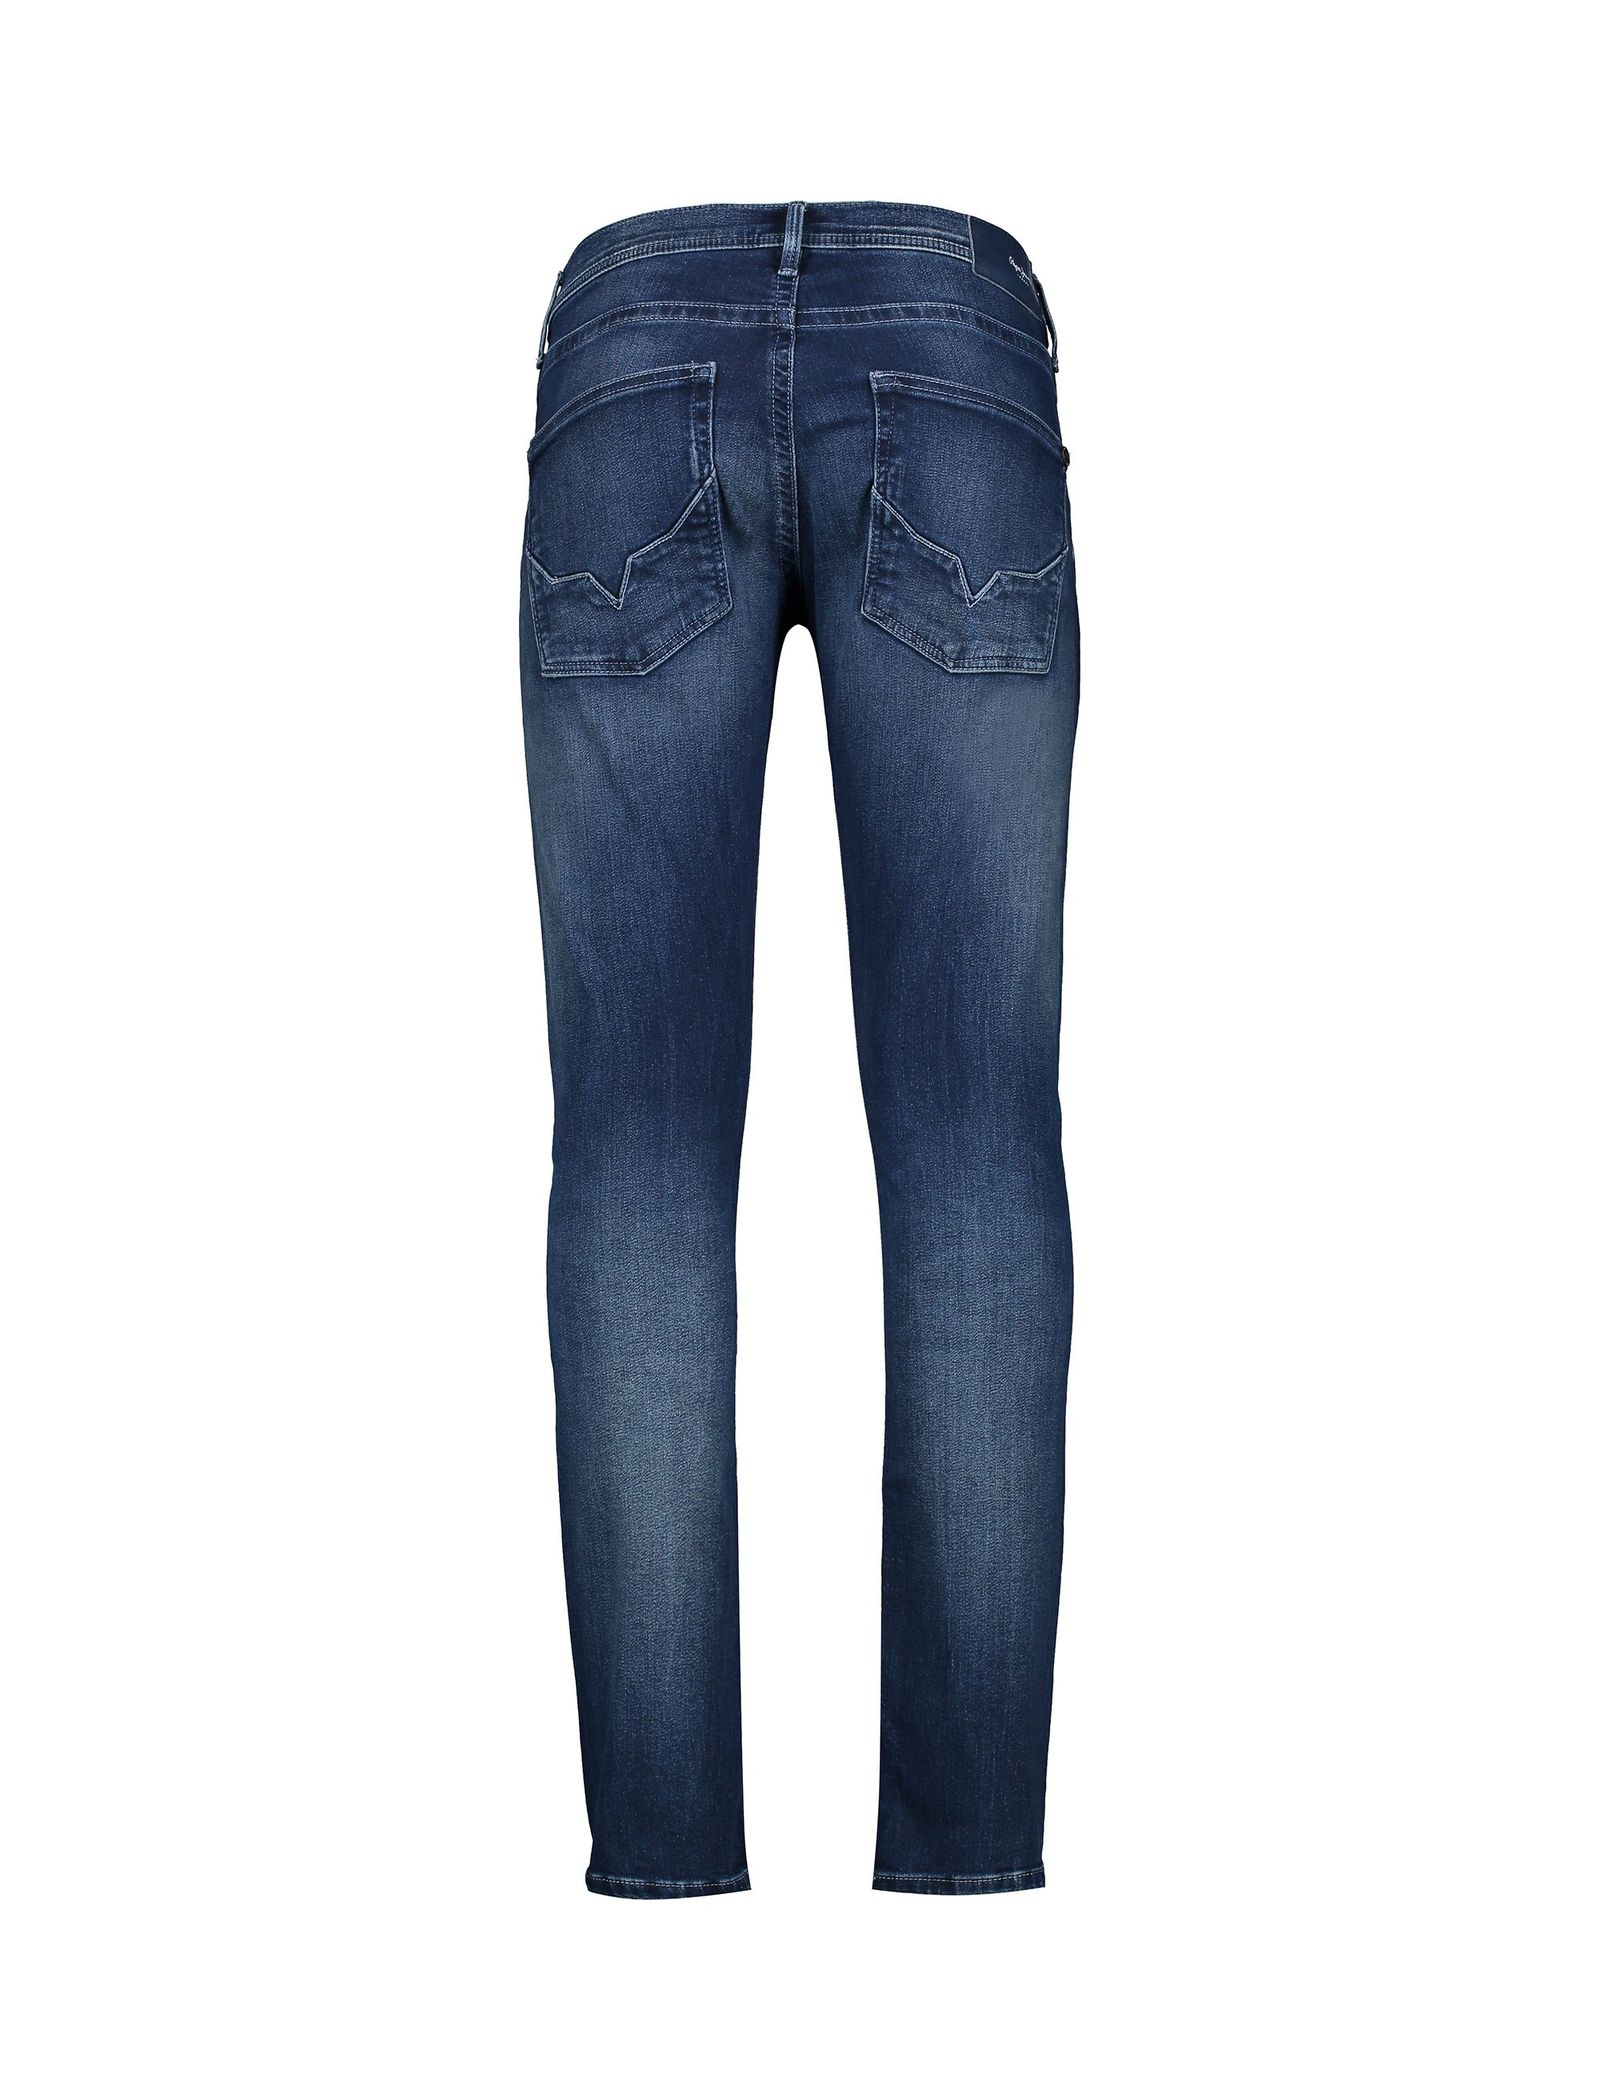 شلوار جین راسته مردانه TRACK - پپه جینز - آبي تيره - 3